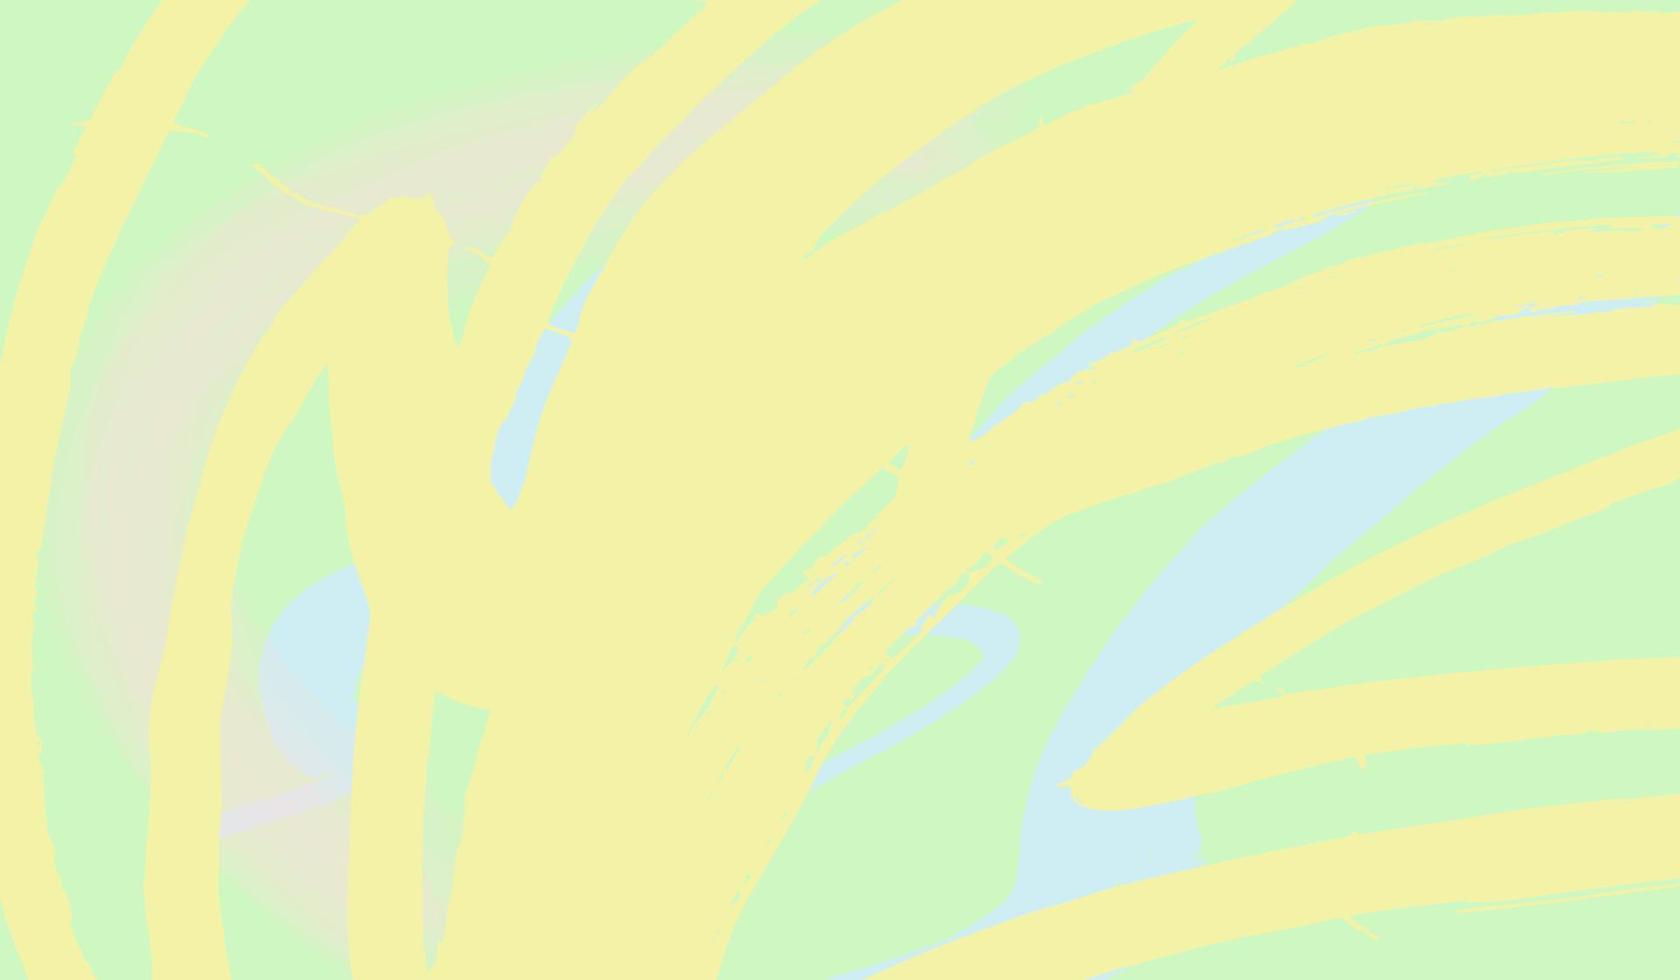 abstrakter hintergrund von sanfter gelber farbe mit grünen spritzern. frische und helle farbkombination nachahmung pinsel markiert .hand-painted.vector vektor